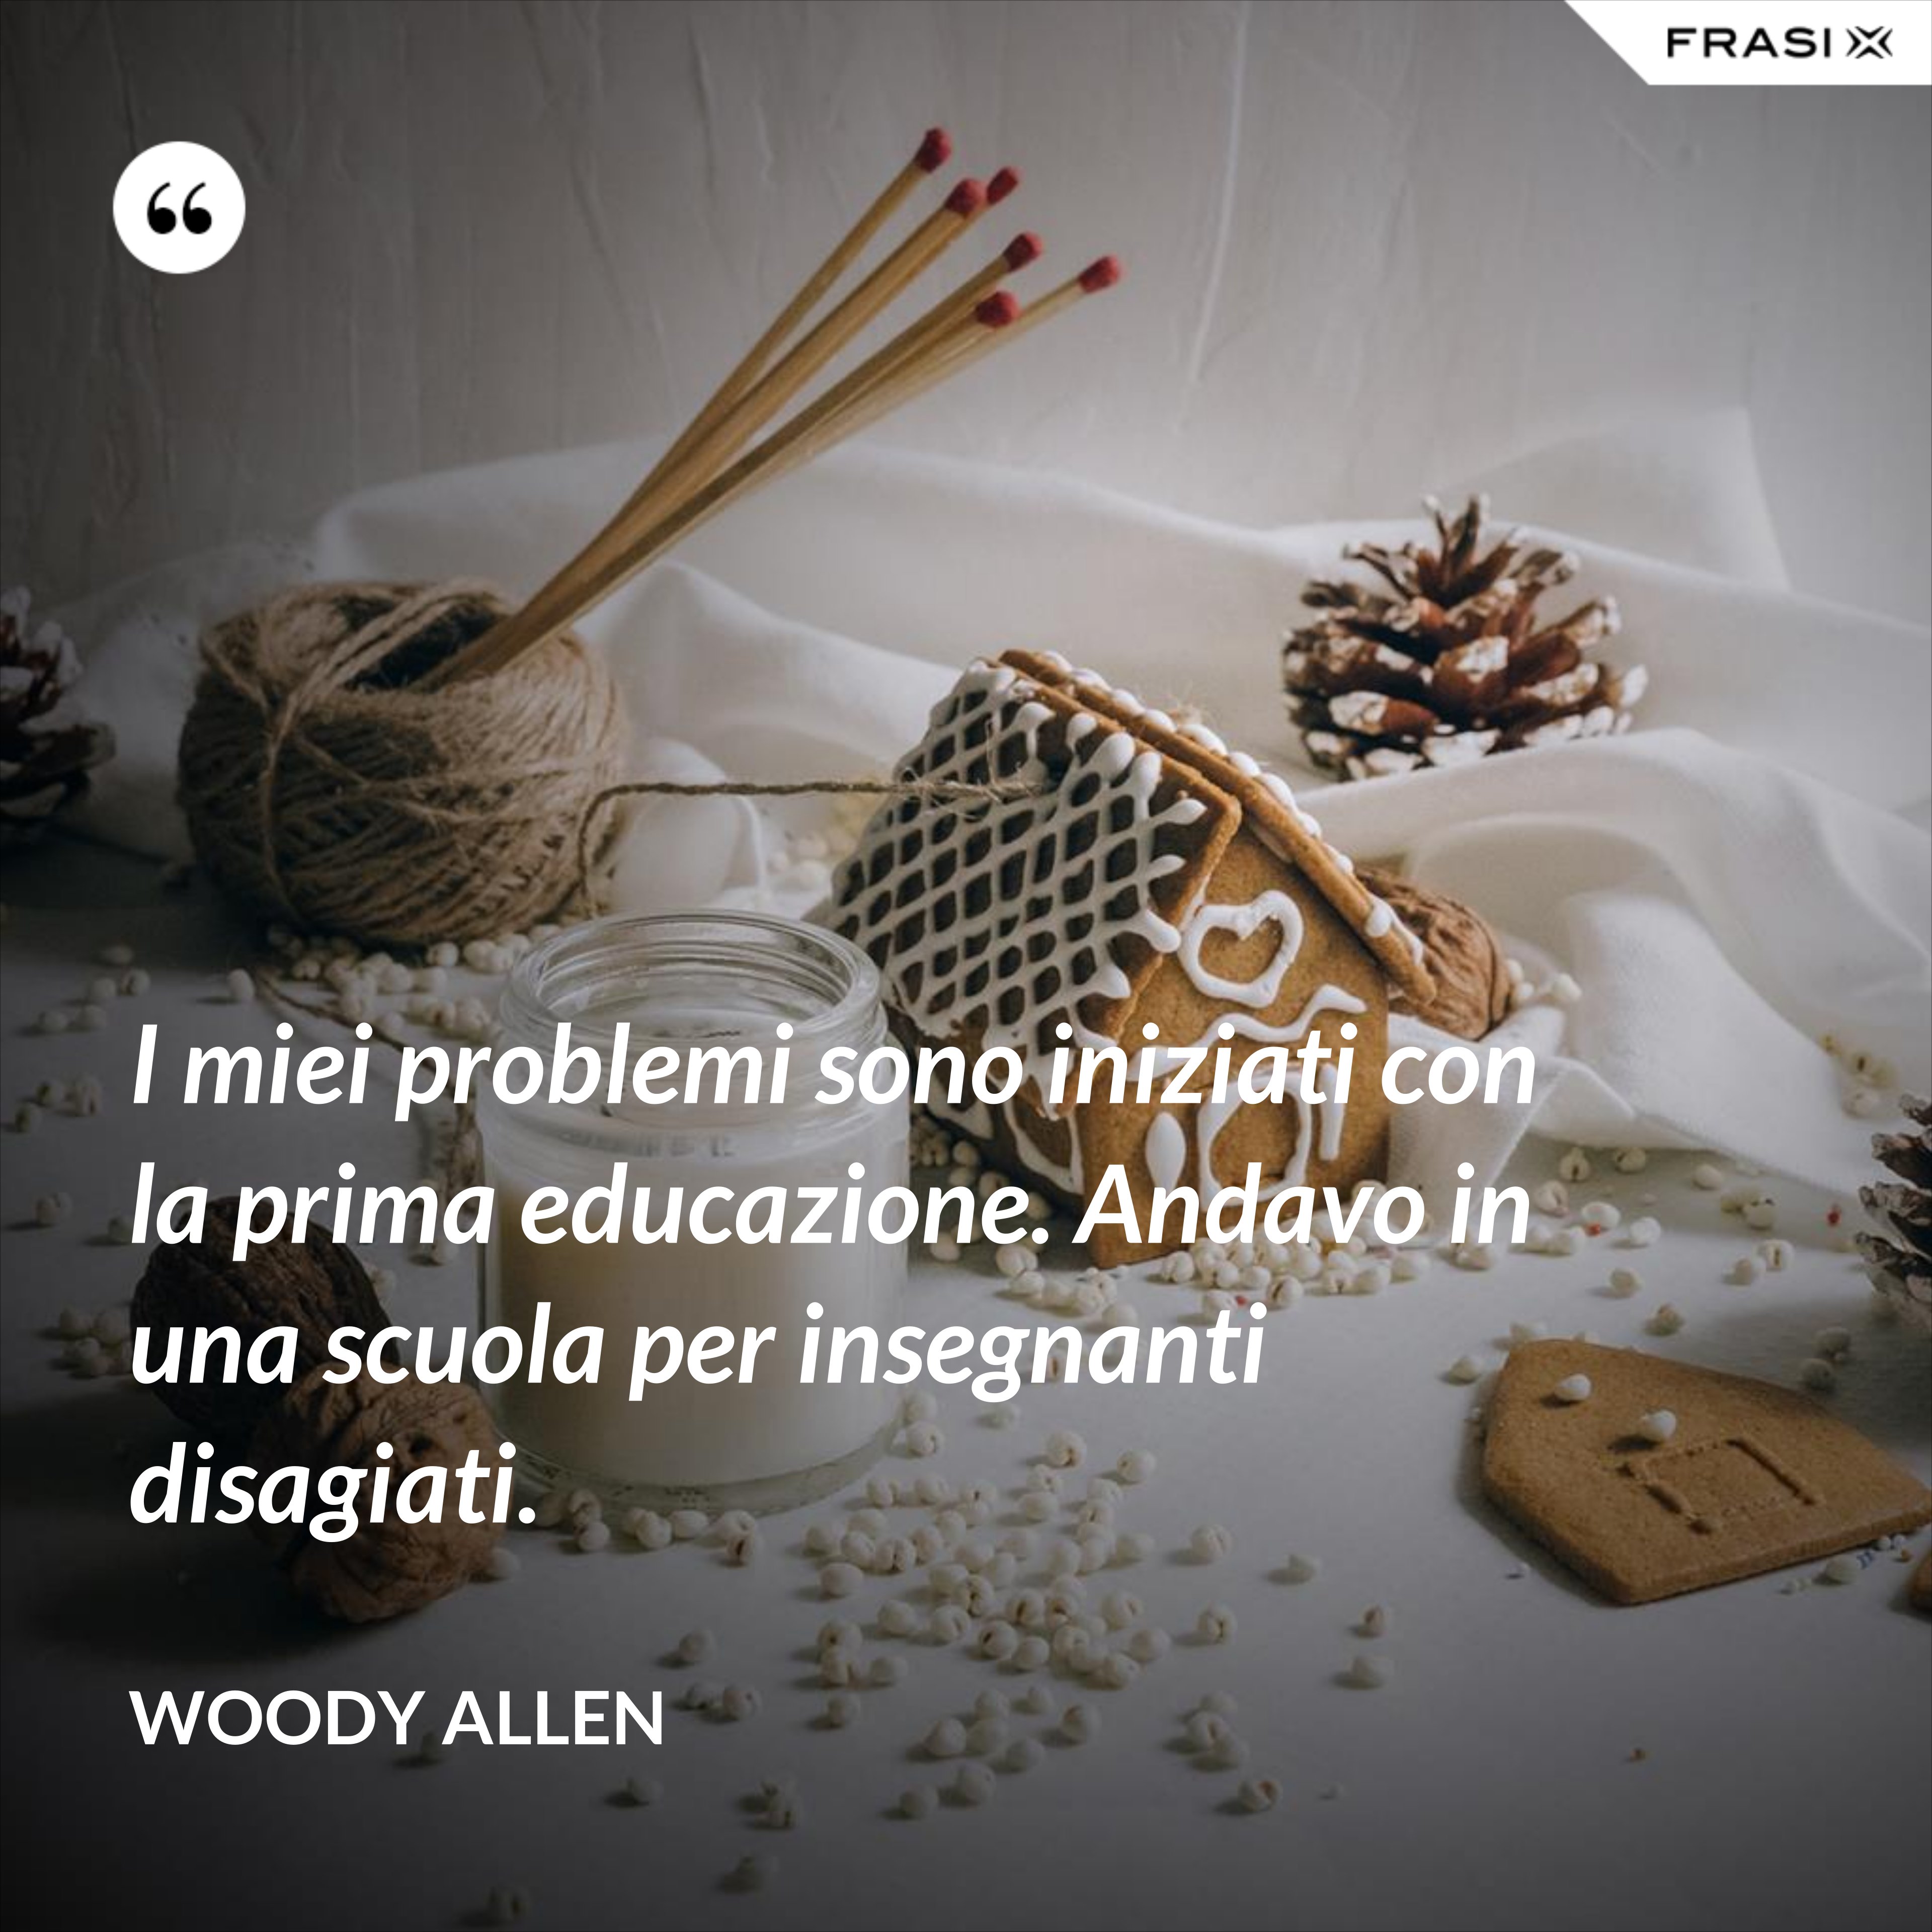 I miei problemi sono iniziati con la prima educazione. Andavo in una scuola per insegnanti disagiati. - Woody Allen